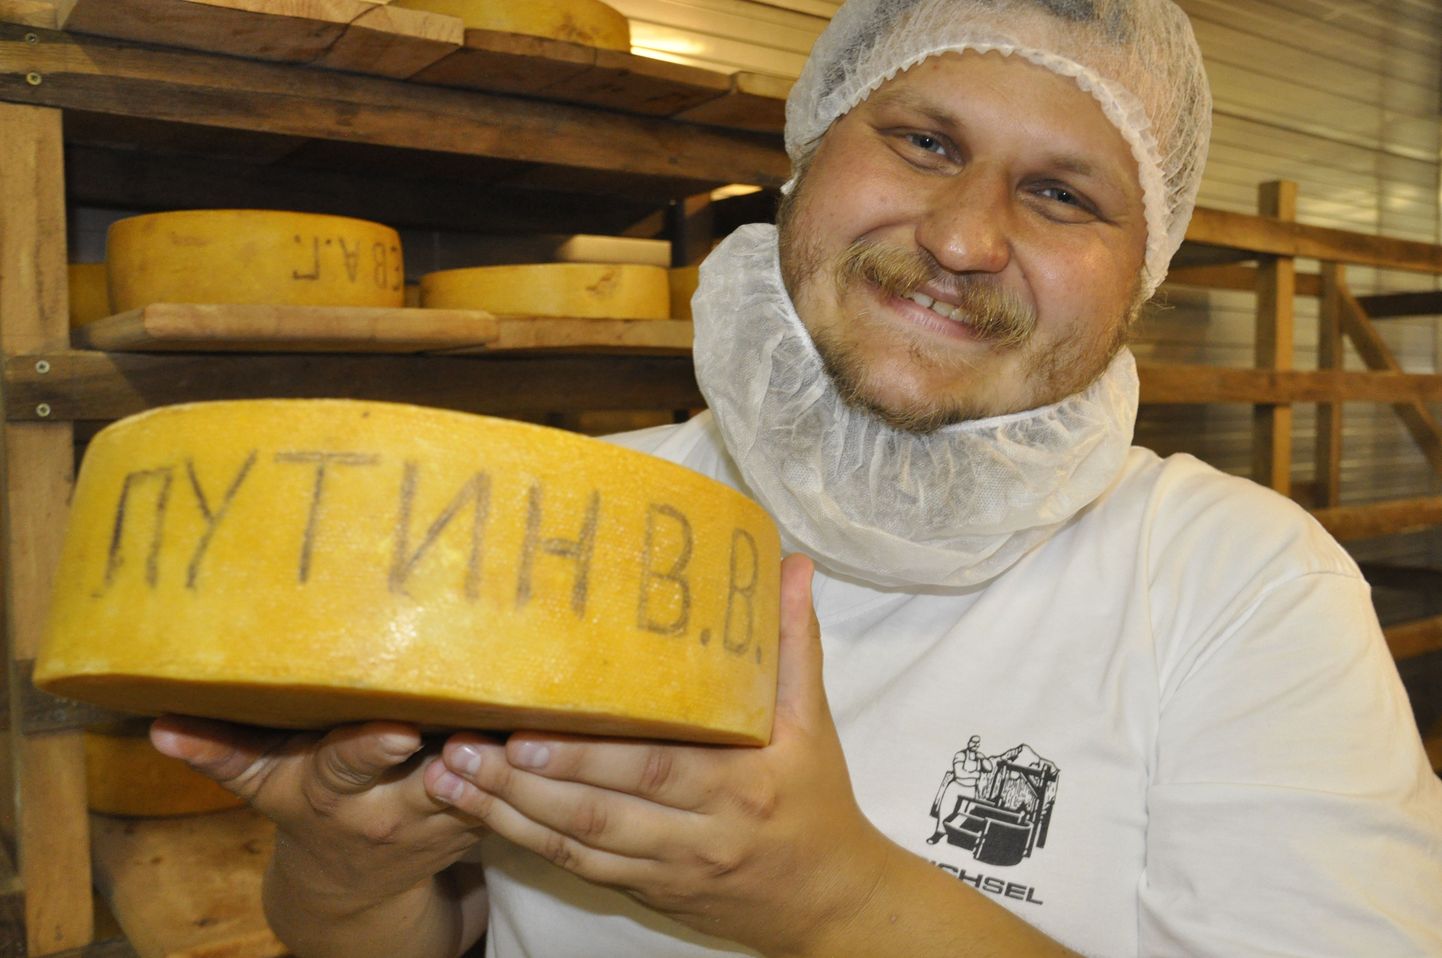 Oleg Sirota näitab rohkem kui viis kilo kaaluvat juustukera, mille ta soovib isiklikult üle anda Vladimir Putinile.